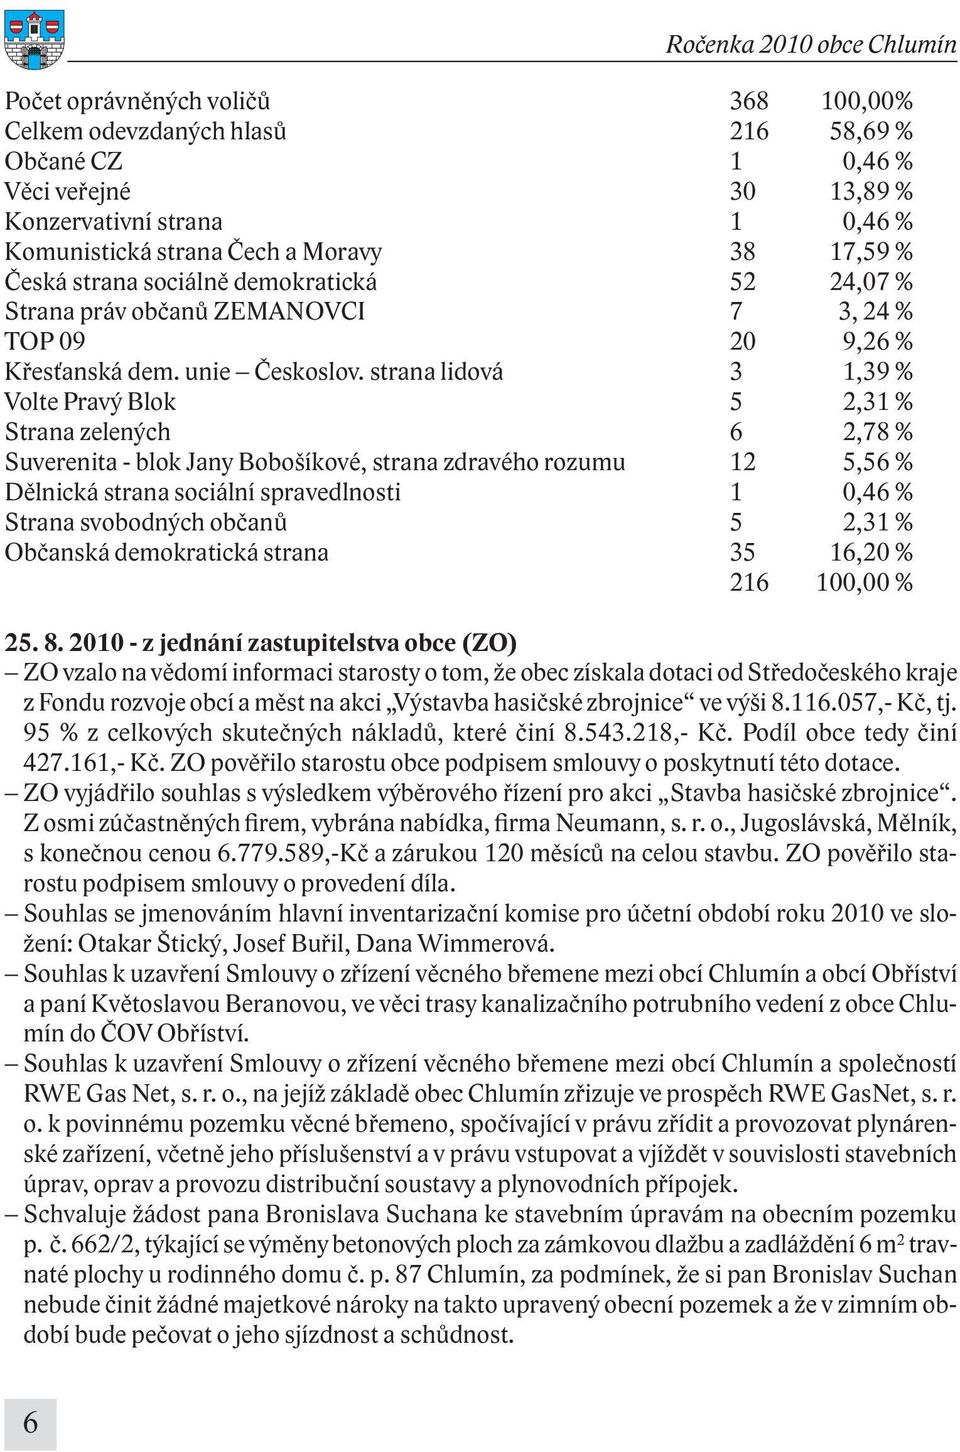 strana lidová 3 1,39 % Volte Pravý Blok 5 2,31 % Strana zelených 6 2,78 % Suverenita - blok Jany Bobošíkové, strana zdravého rozumu 12 5,56 % Dělnická strana sociální spravedlnosti 1 0,46 % Strana